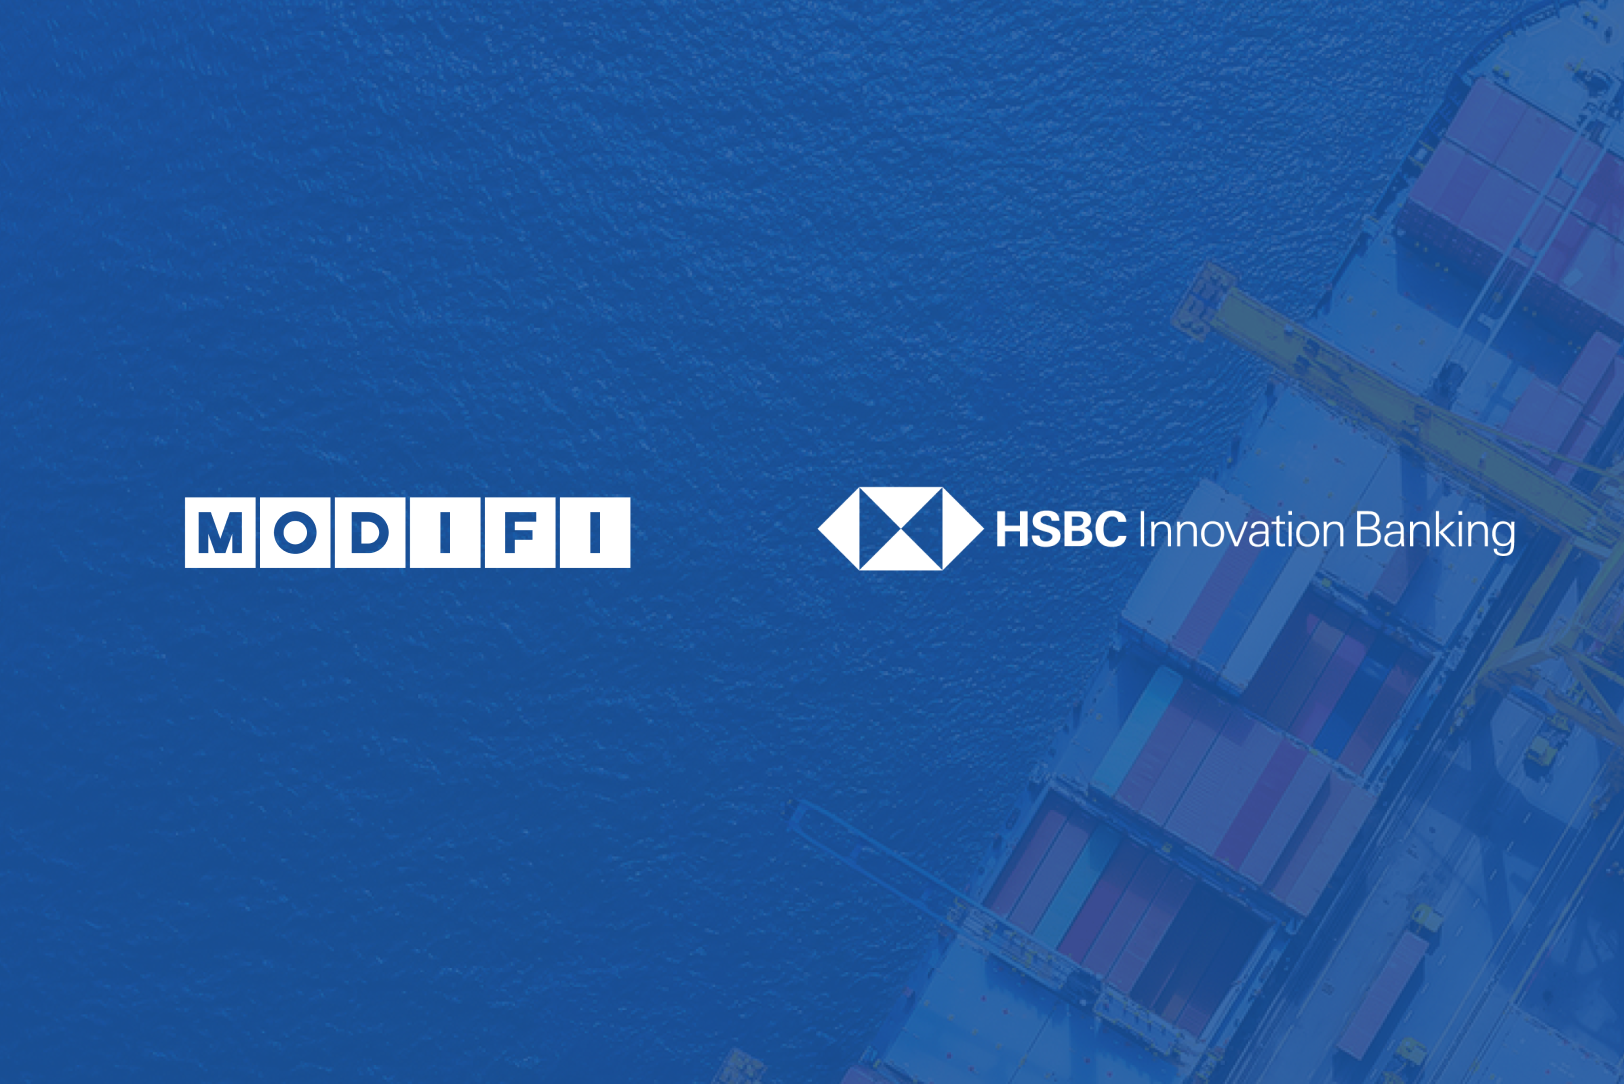 全球跨境B2B支付公司MODIFI贸德飞获汇丰创新银行1亿美元的债务融资支持